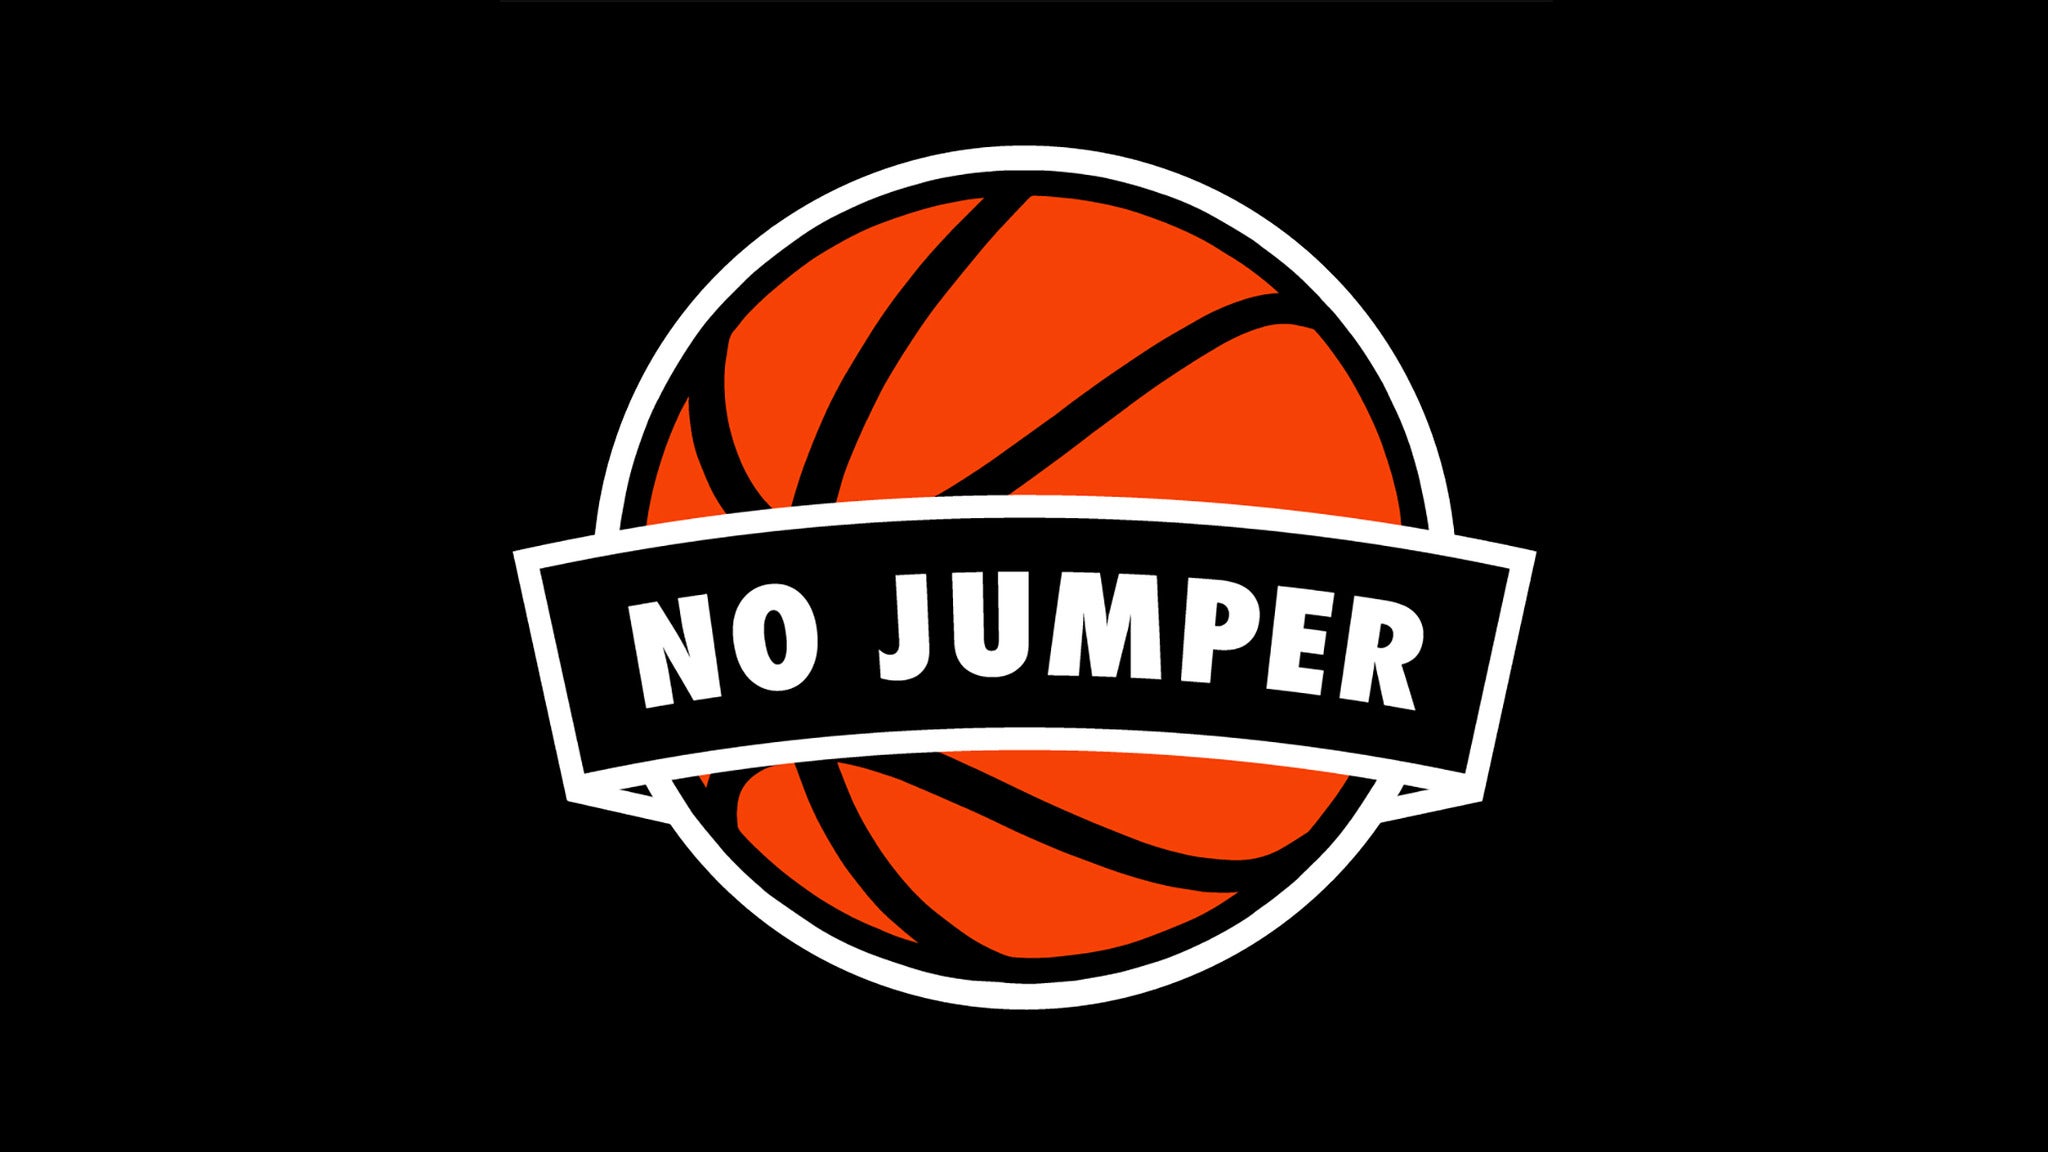 No Jumper Live Podcast (18+) in Boston promo photo for Nojumper.com presale offer code